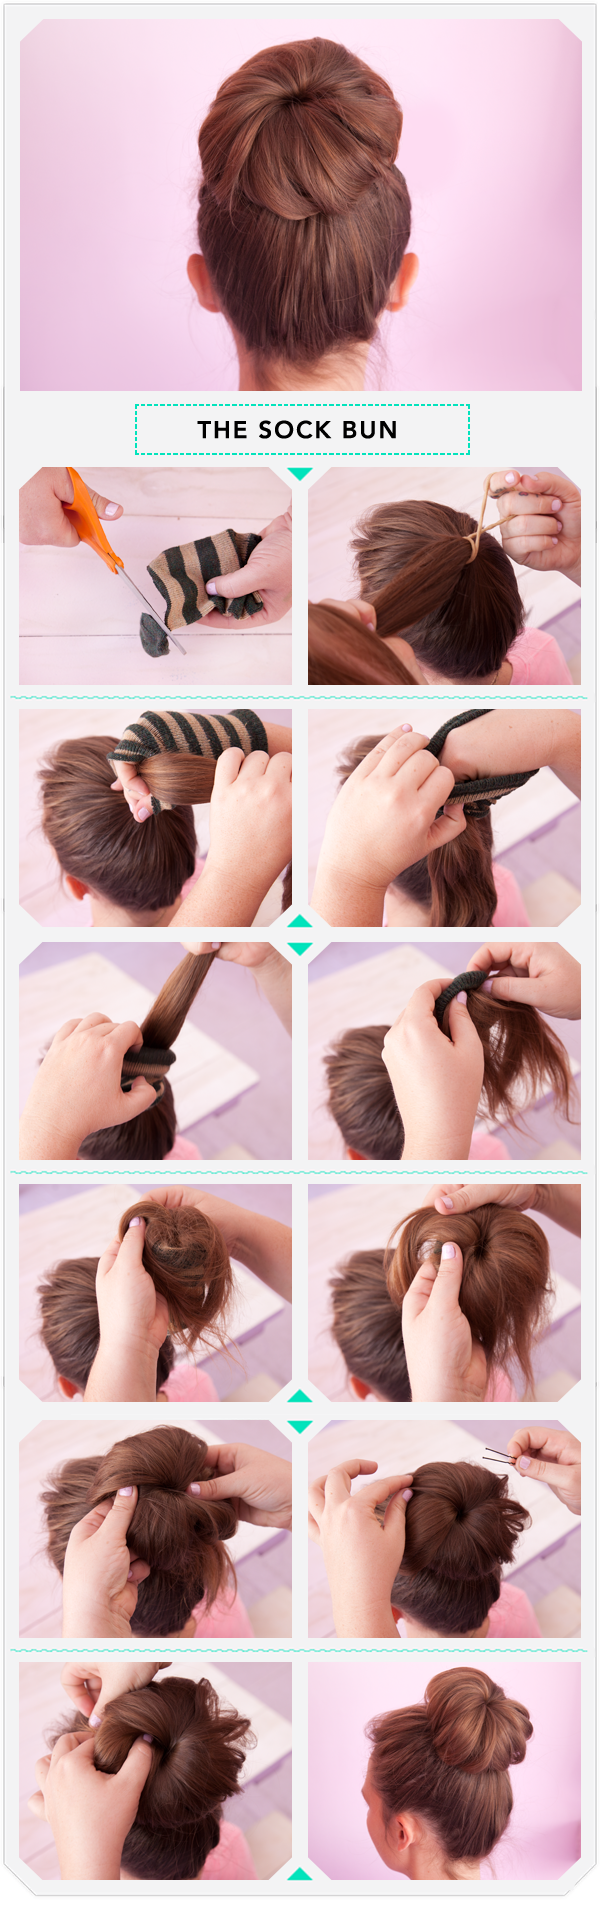 Как сделать шишку из волос на голове: как правильно собрать красивую объемную прическу на длинные, средние, короткие волосы, фото разновидностей (низкая, с распущенными локонами), видео